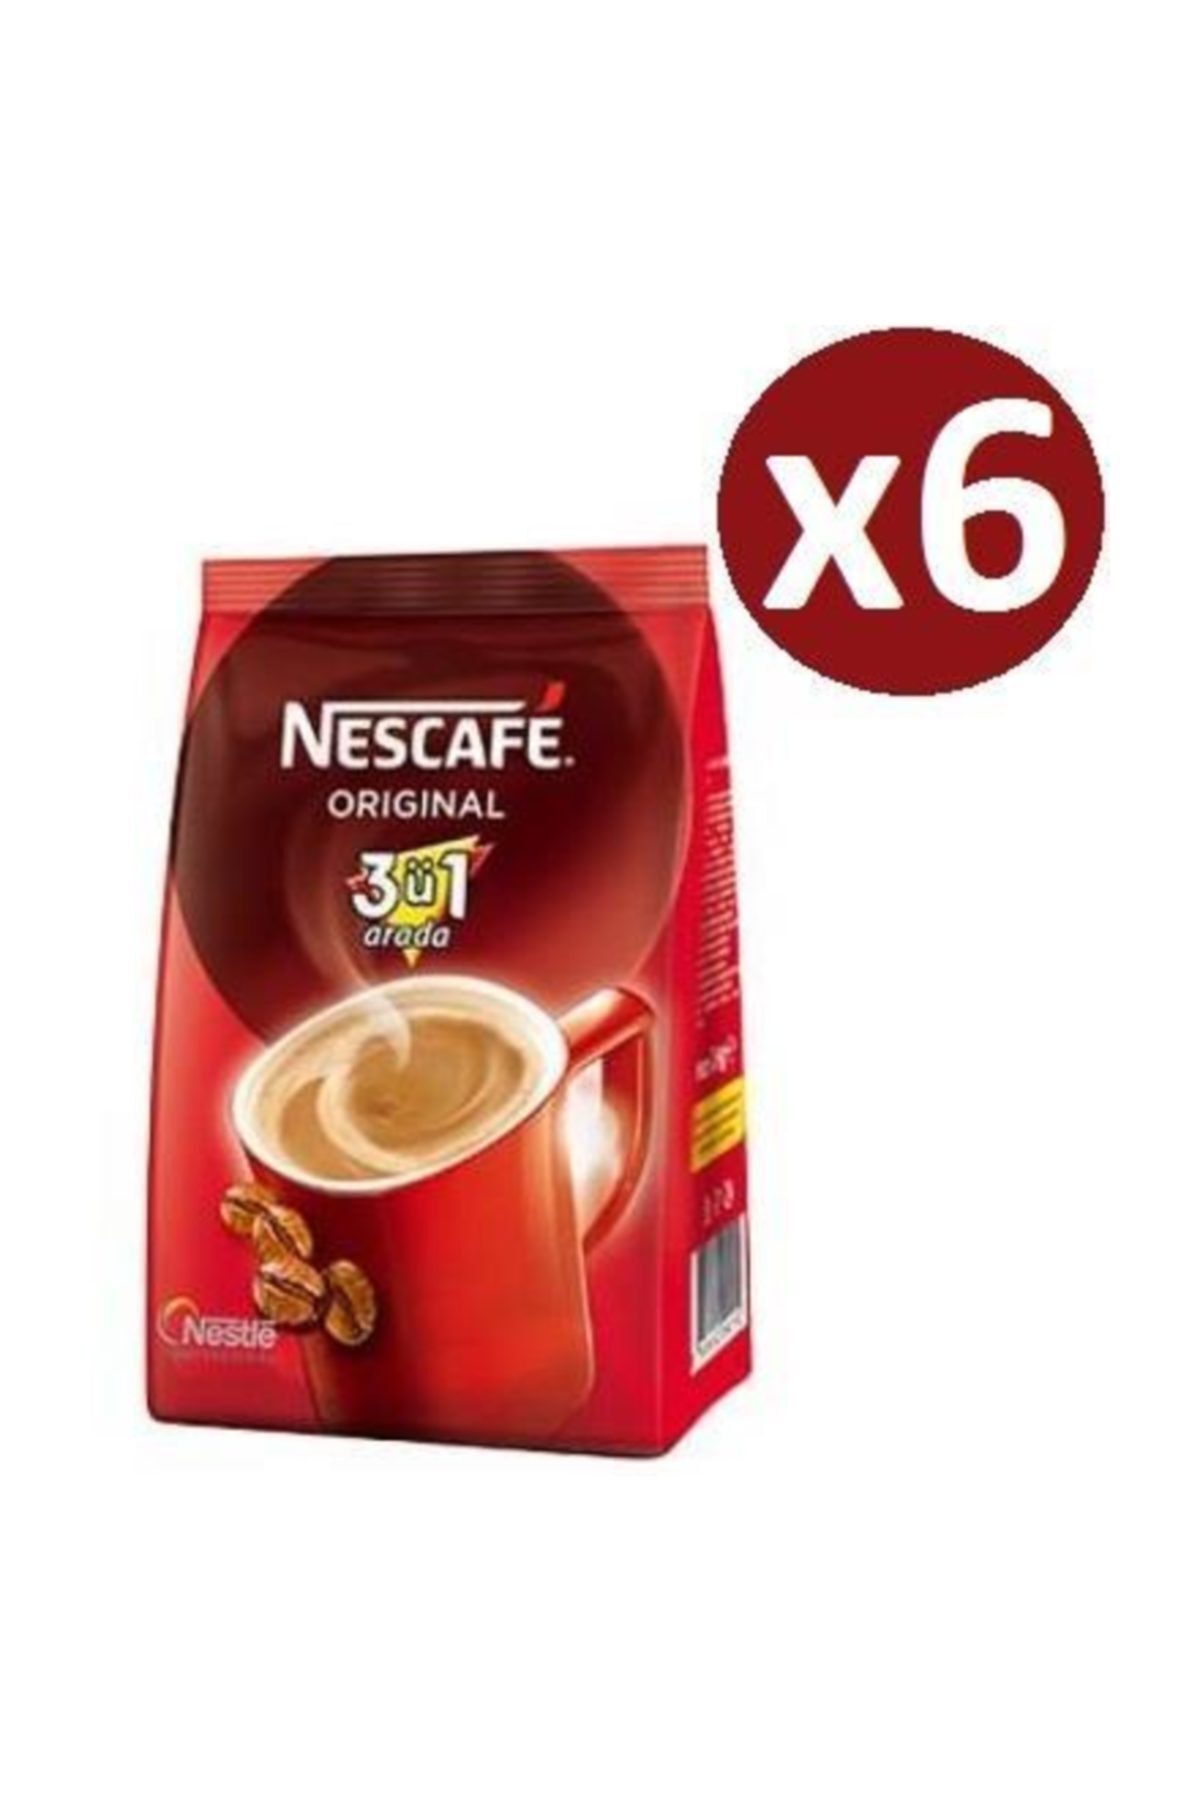 Nescafe 3'ü1 Arada Original 1 kg X 6 Adet